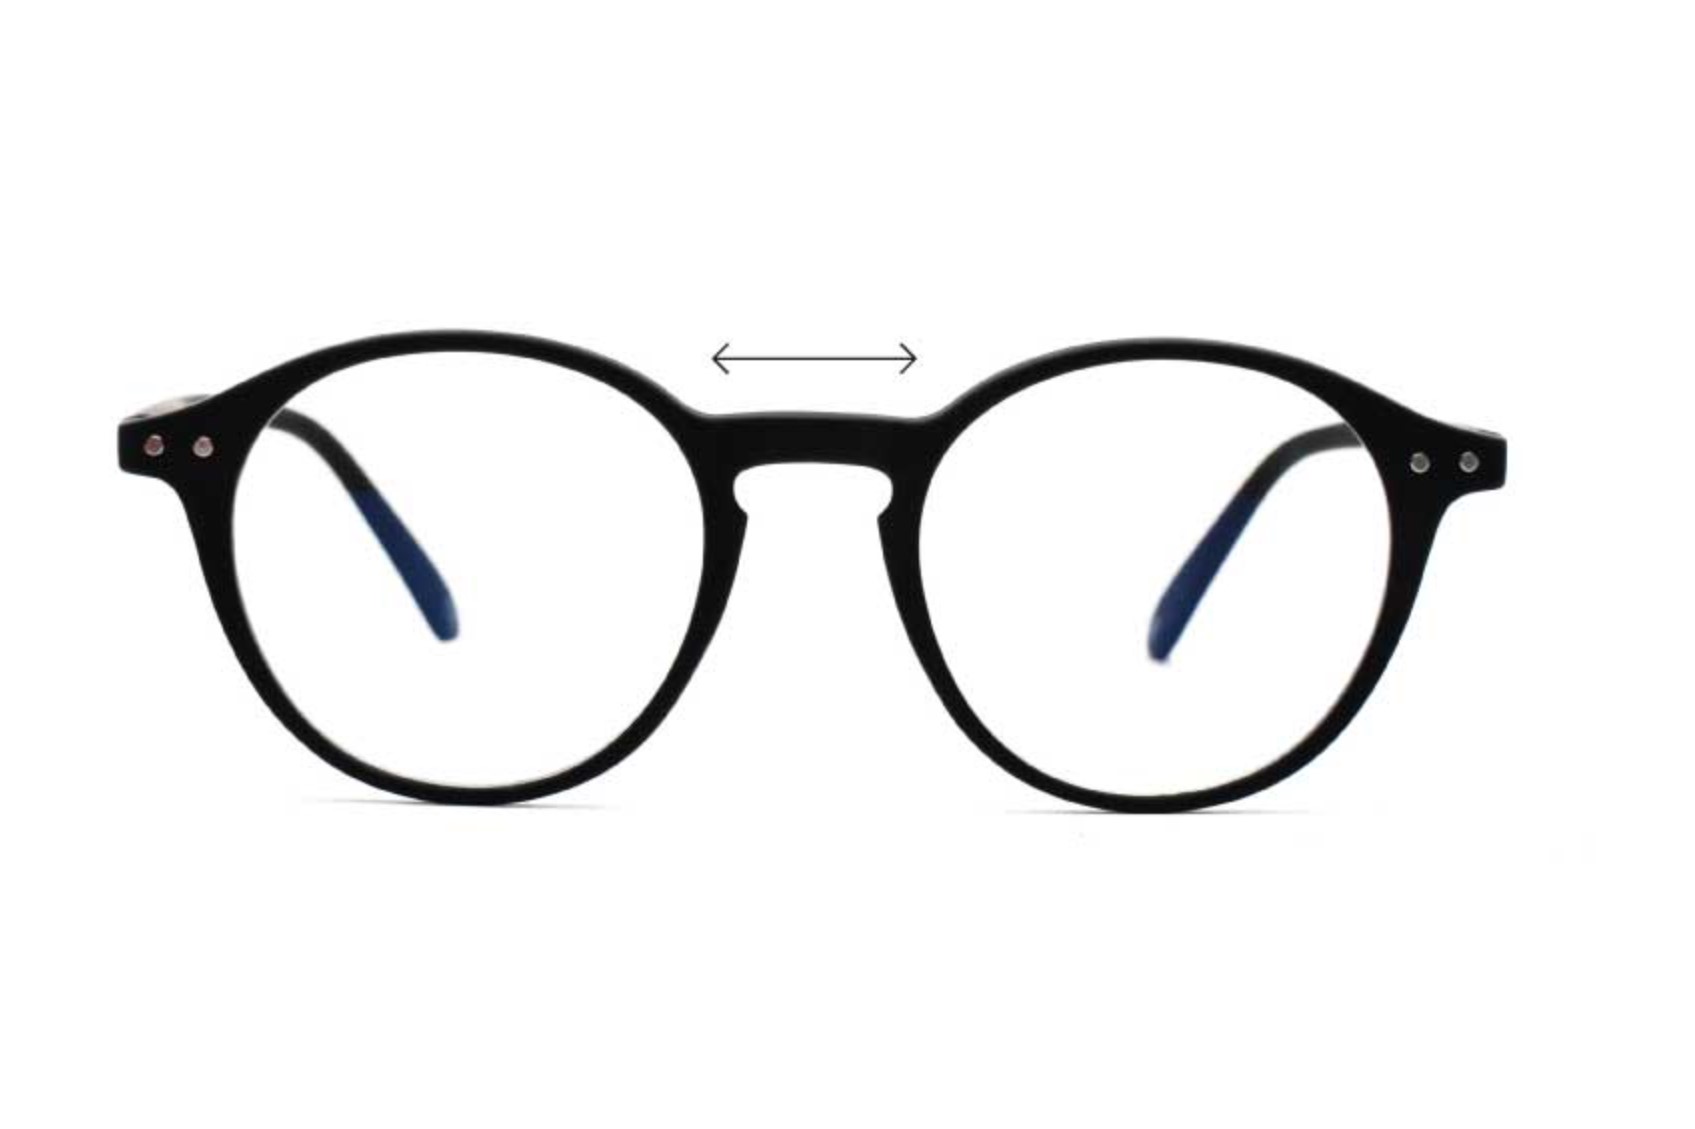 – Luca UVAllBlue m Blue Light Glasses, Men's